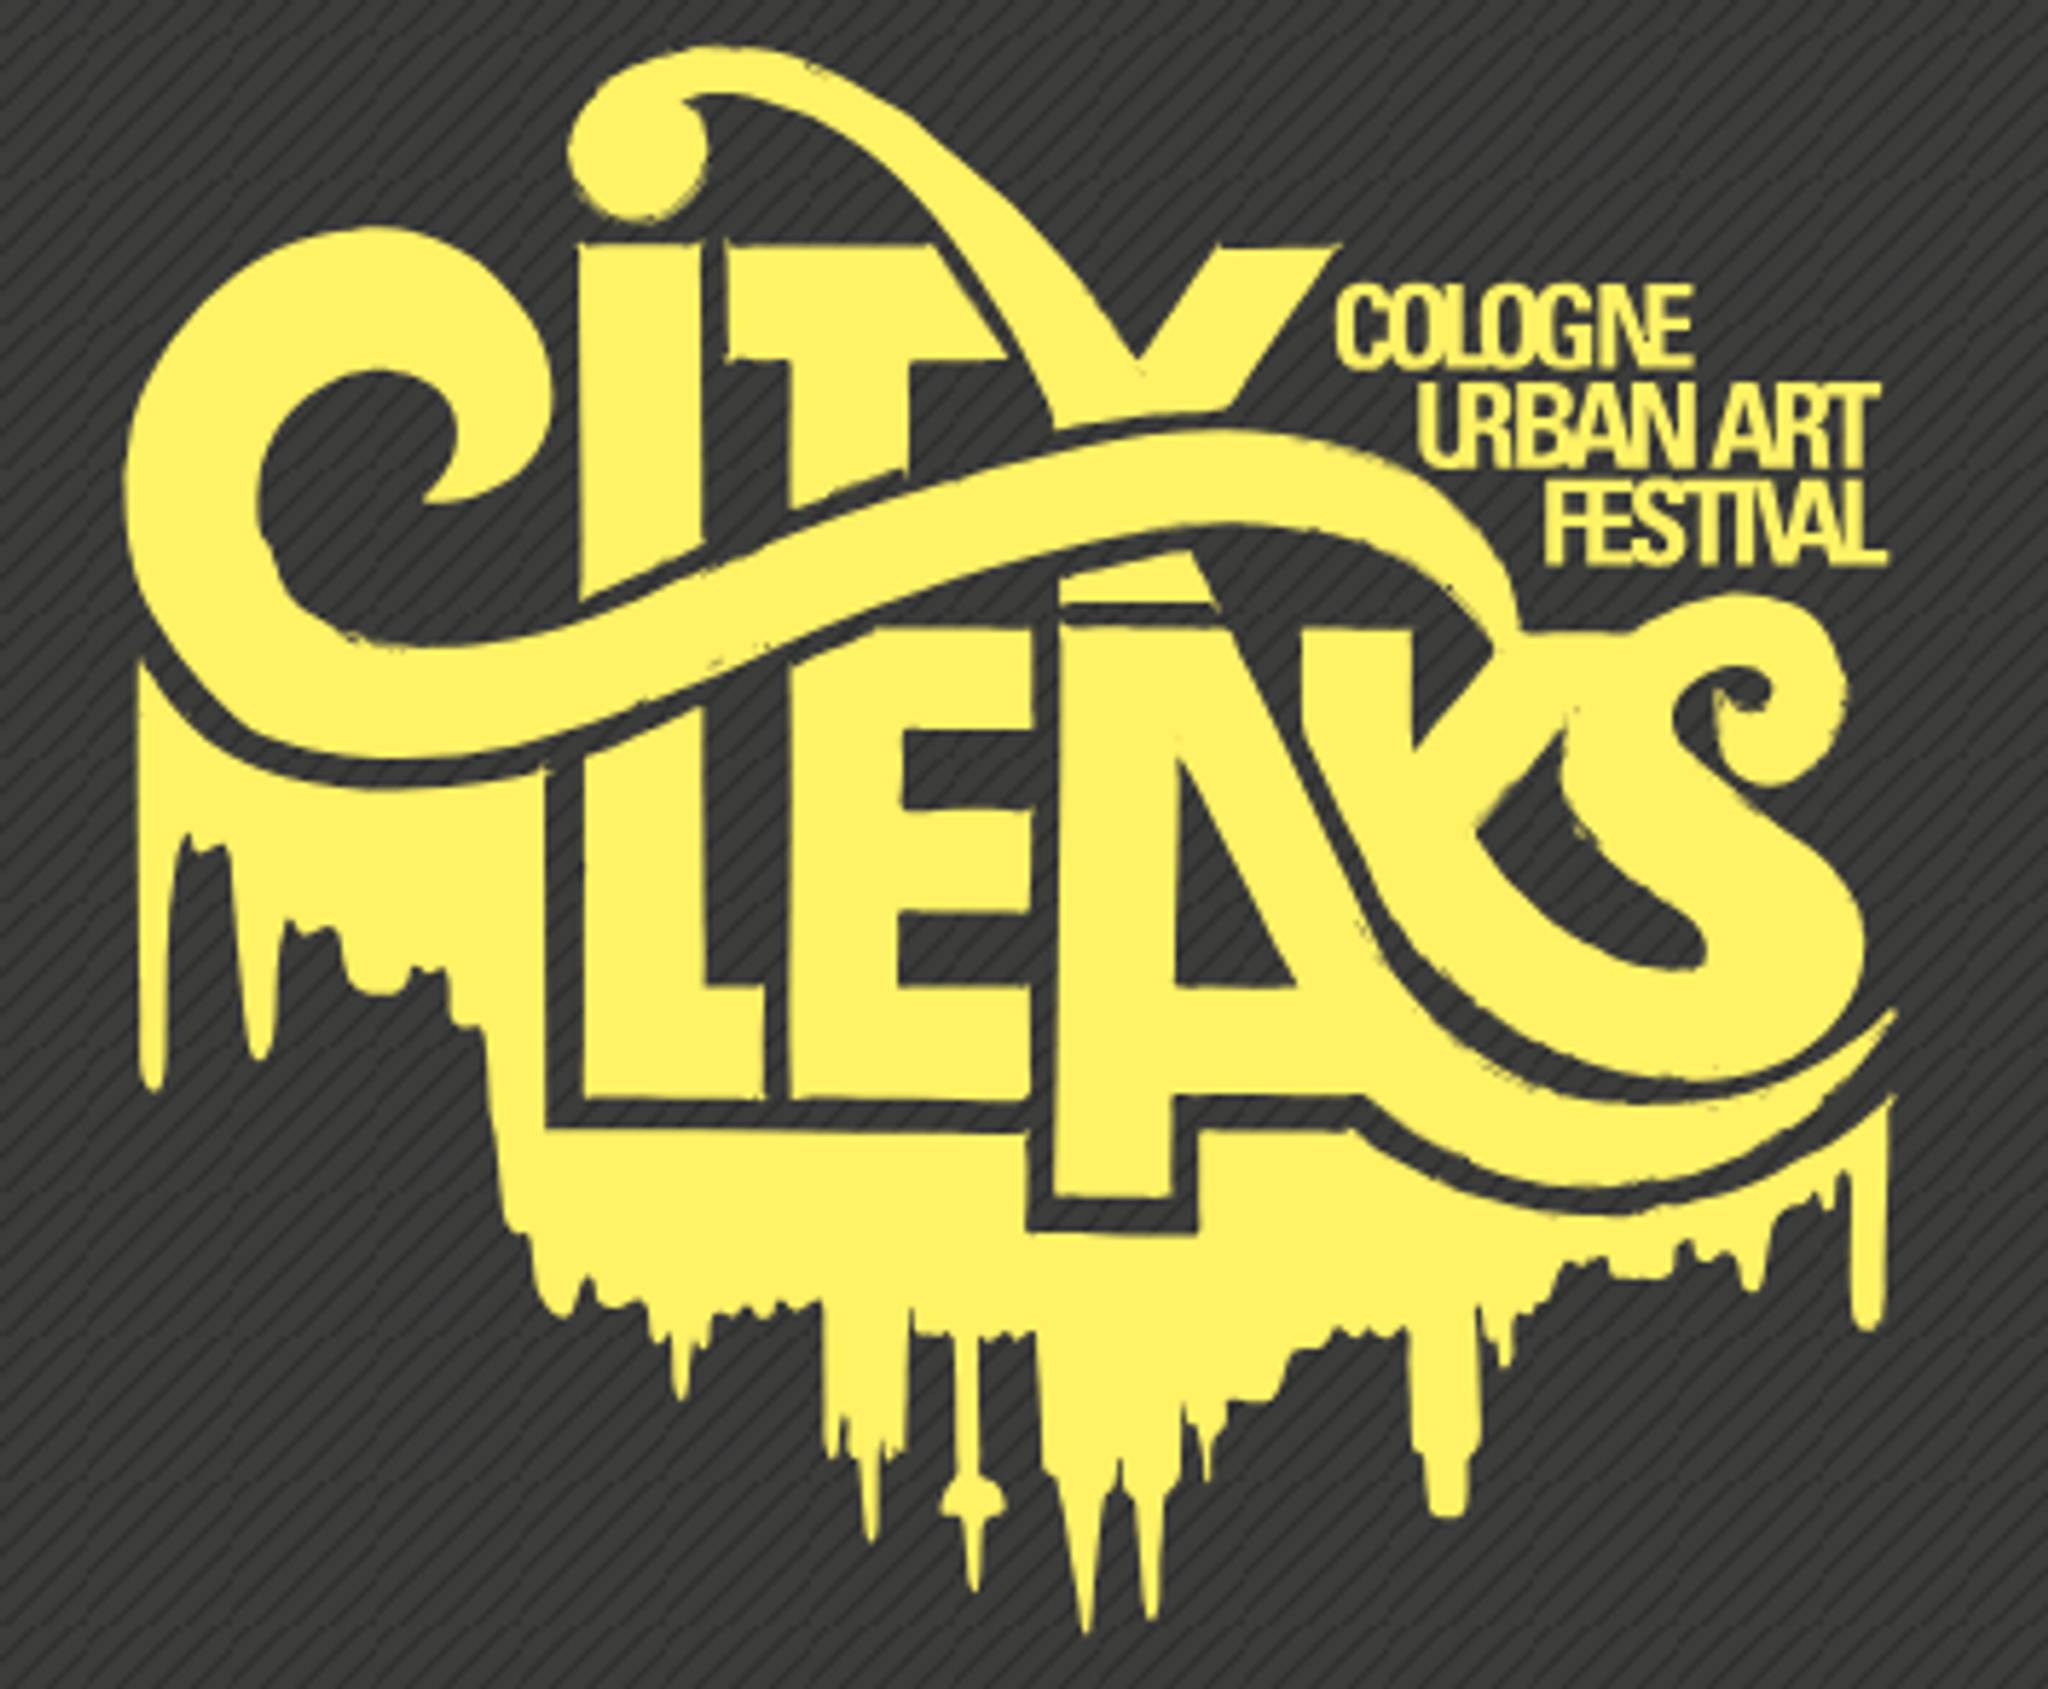 &mdash;City Leaks Festival